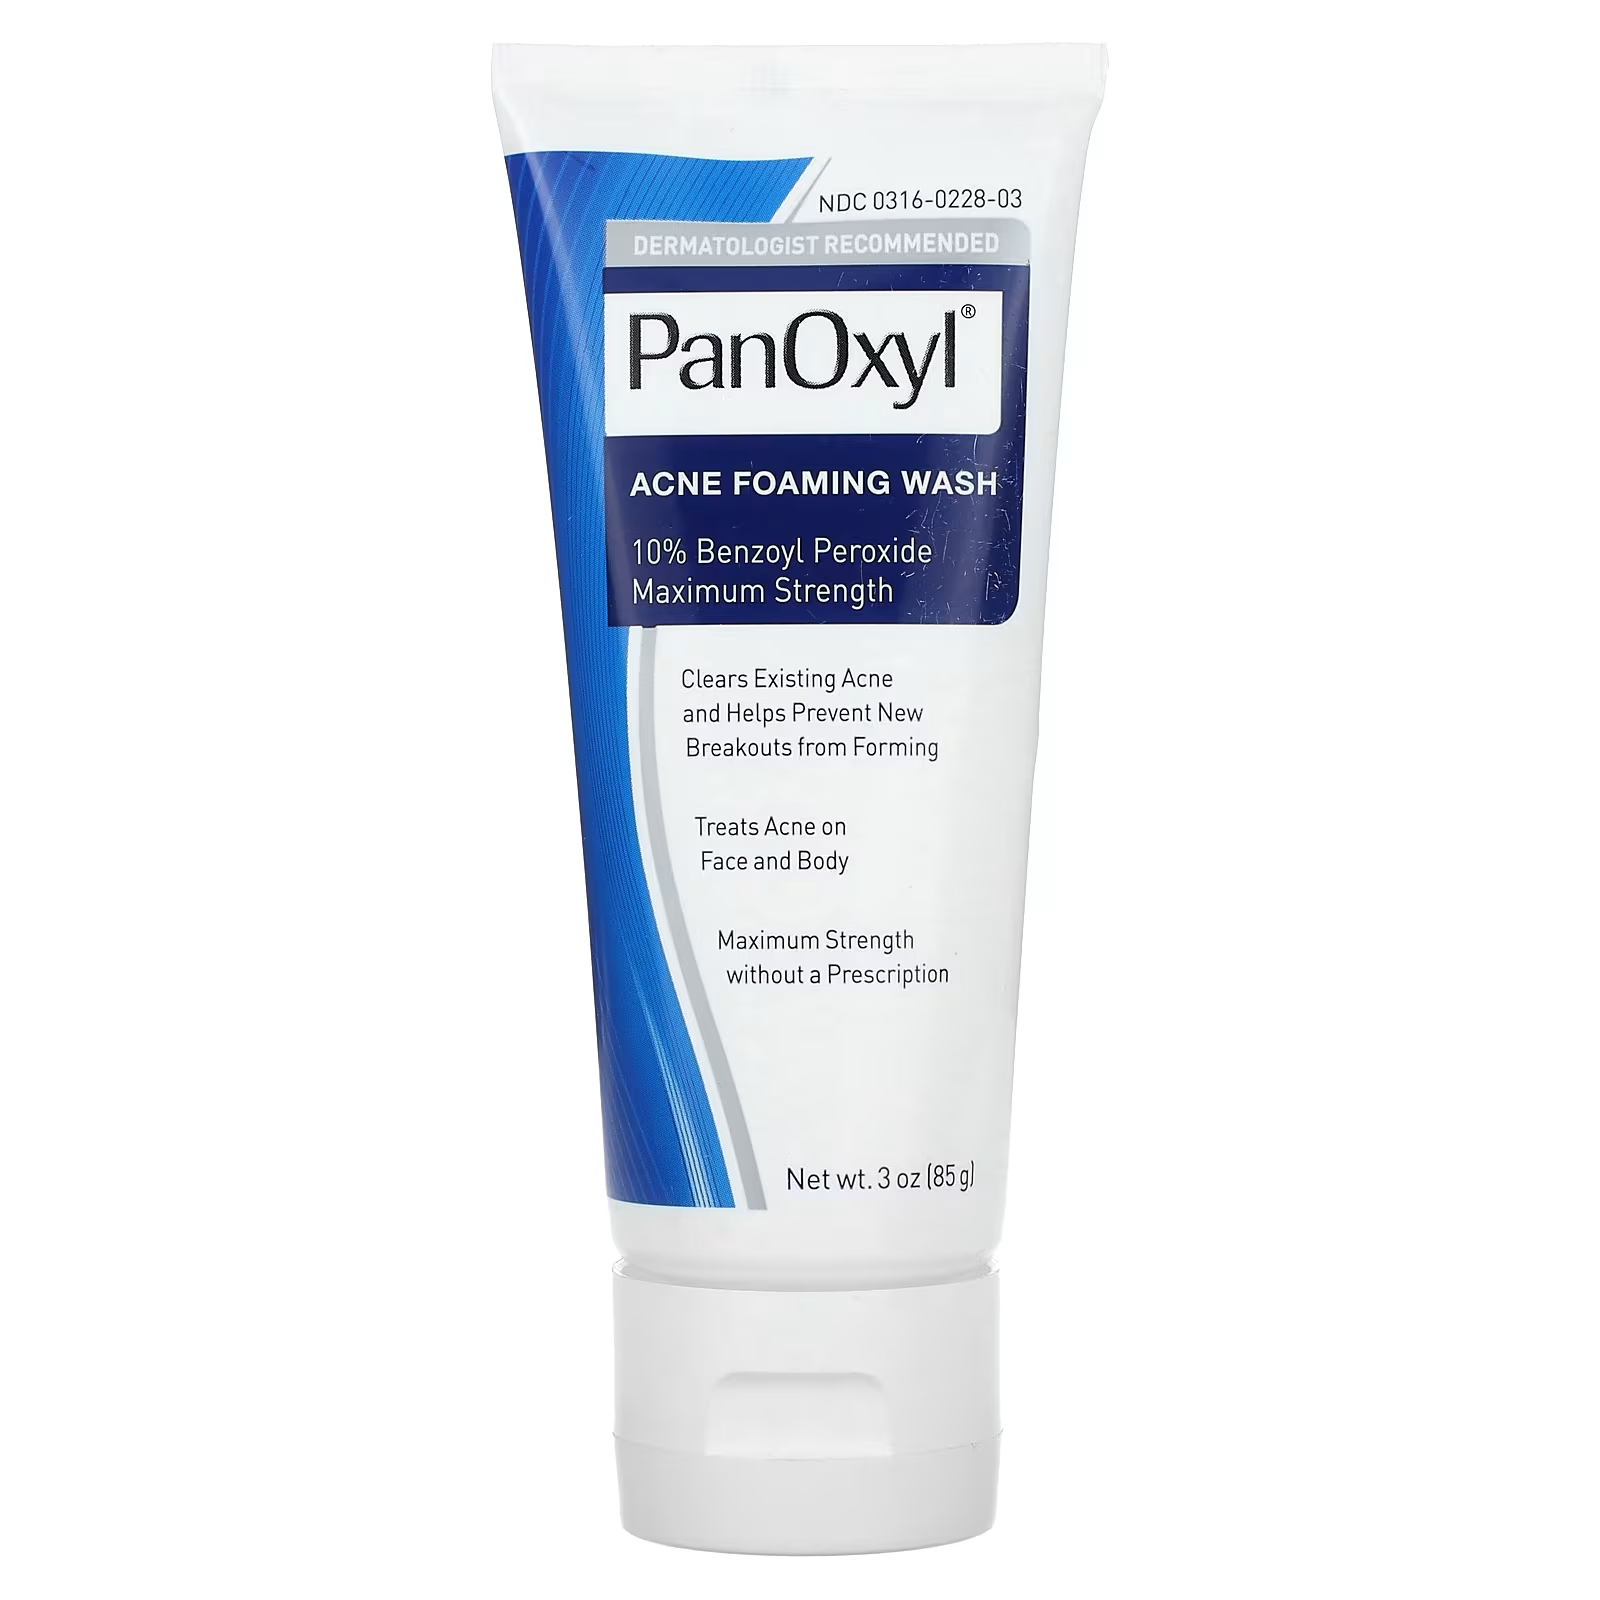 Пенка для умывания PanOxyl от прыщей, 85 г пенка для умывания от прыщей panoxyl бензоилпероксид 10% 156 г